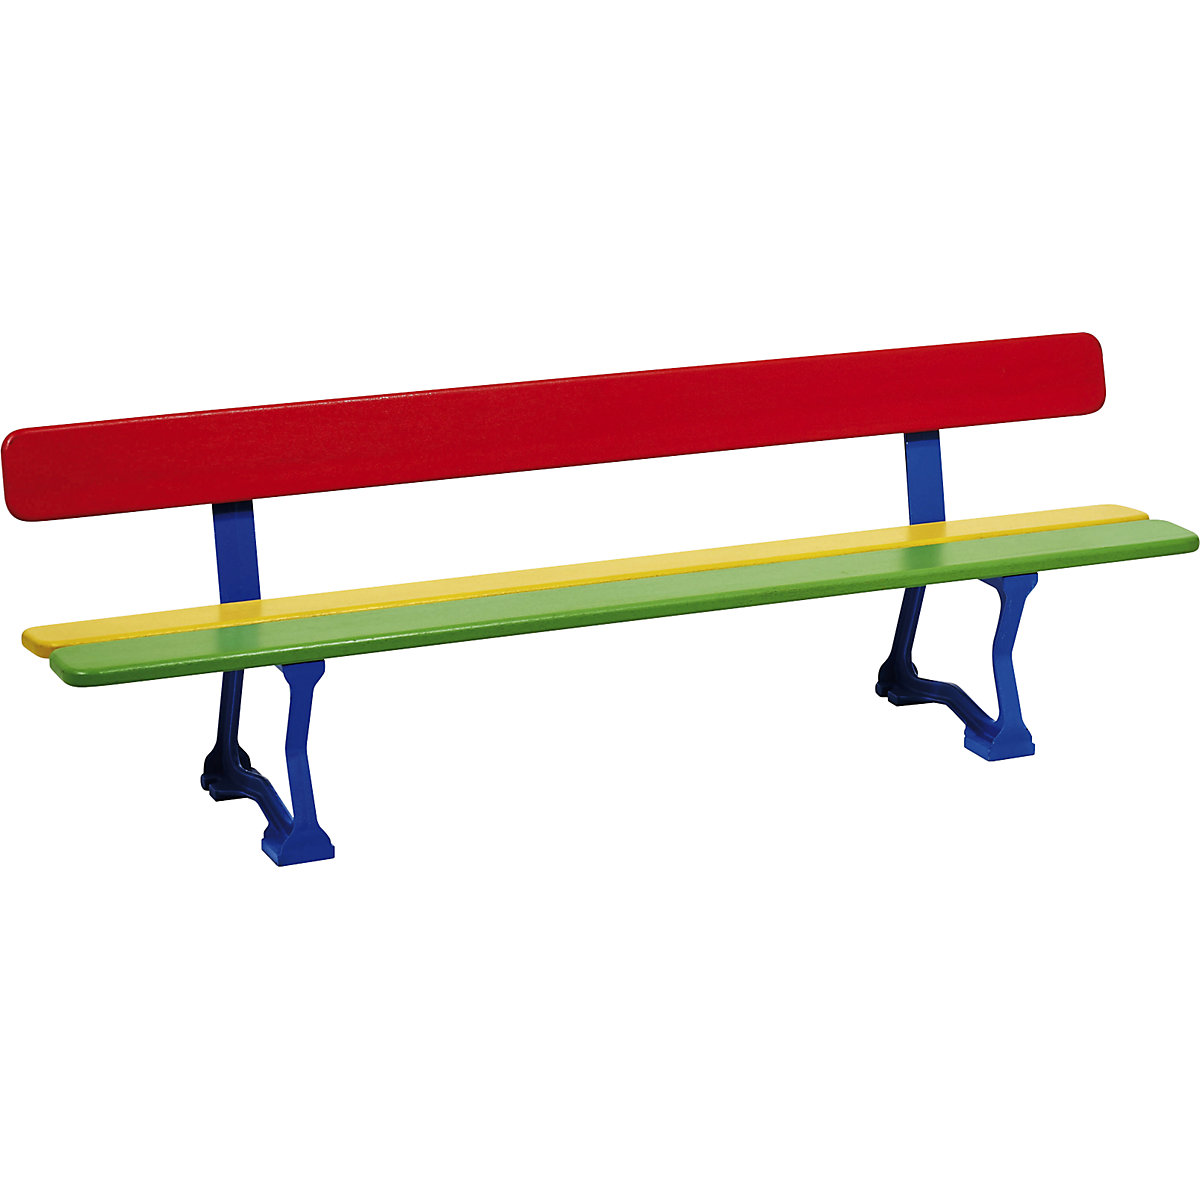 MORA bench for children – PROCITY